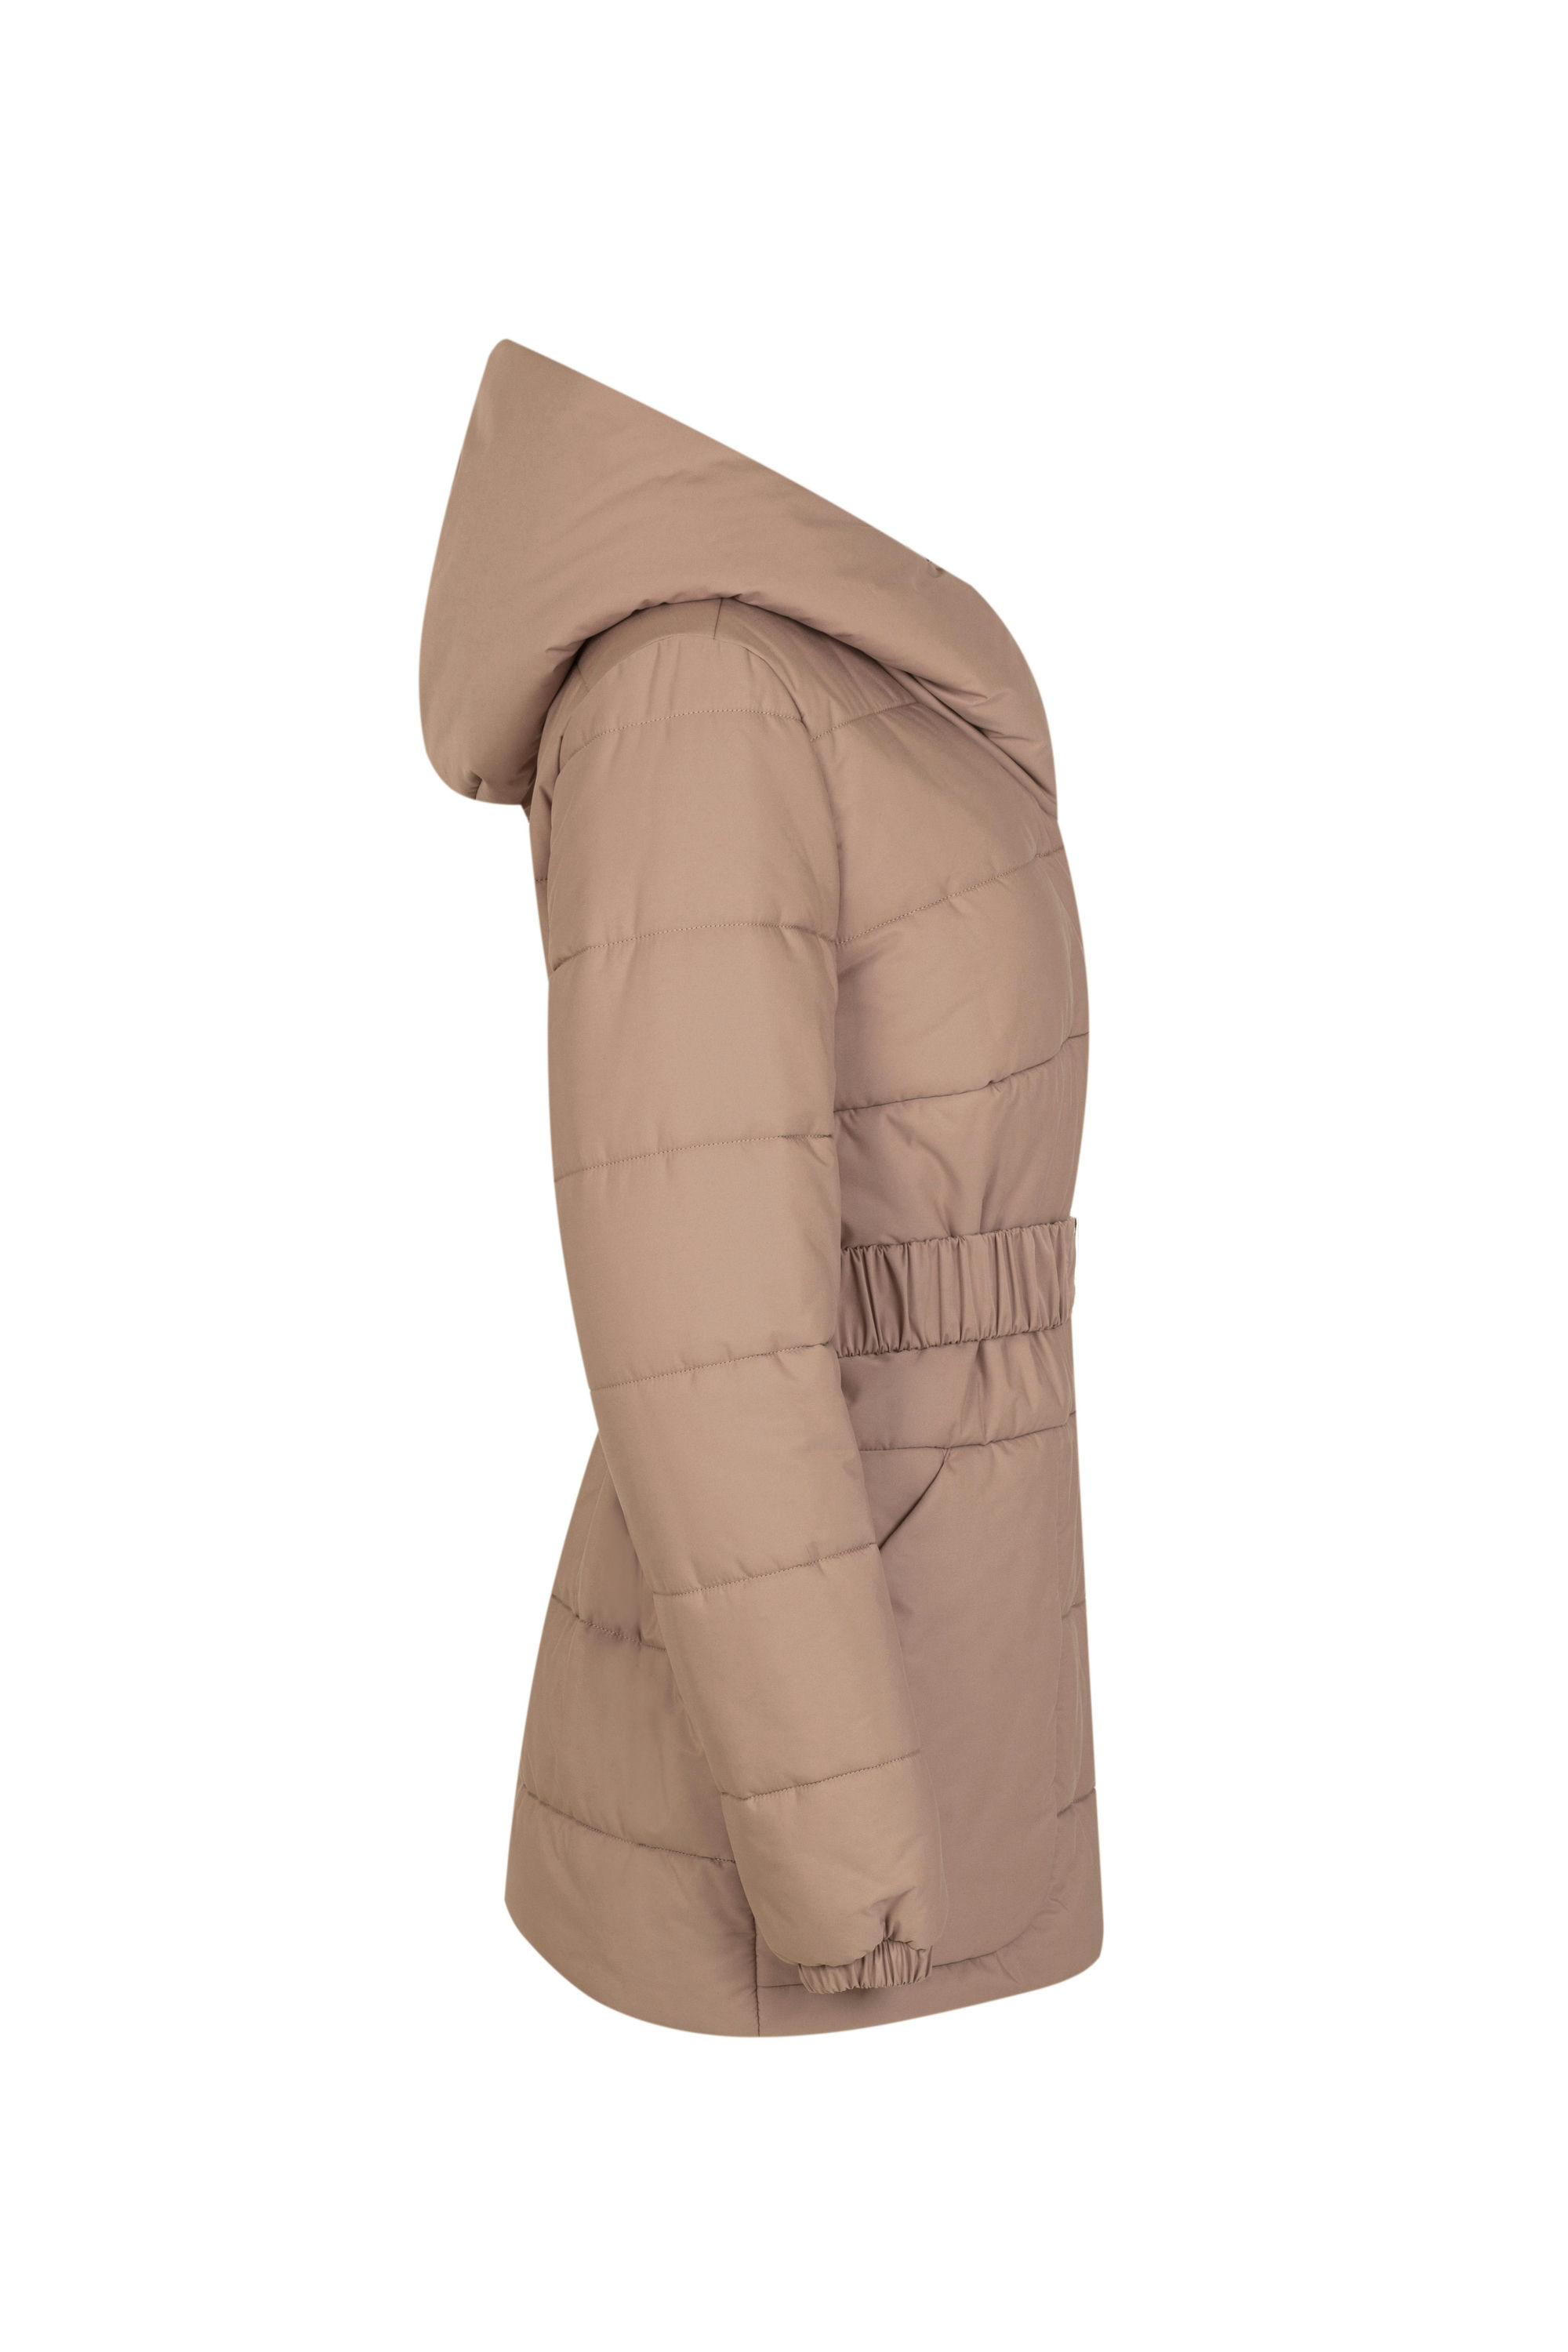 Куртка женская плащевая утепленная 4-12409-1. Фото 2.